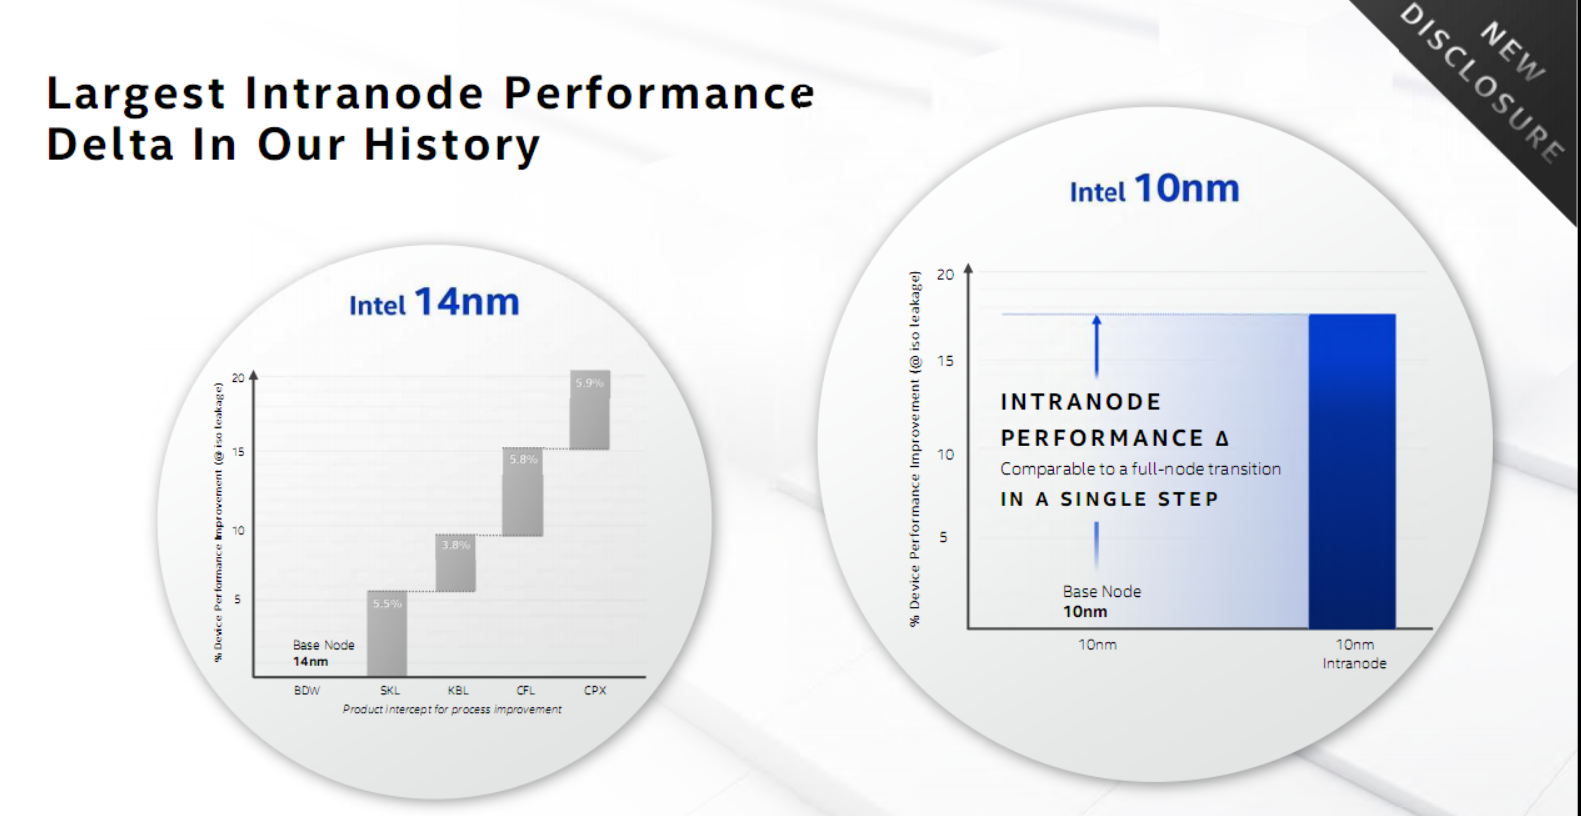 Intel 10nm SuperFin变革晶体管：性能提升超15%